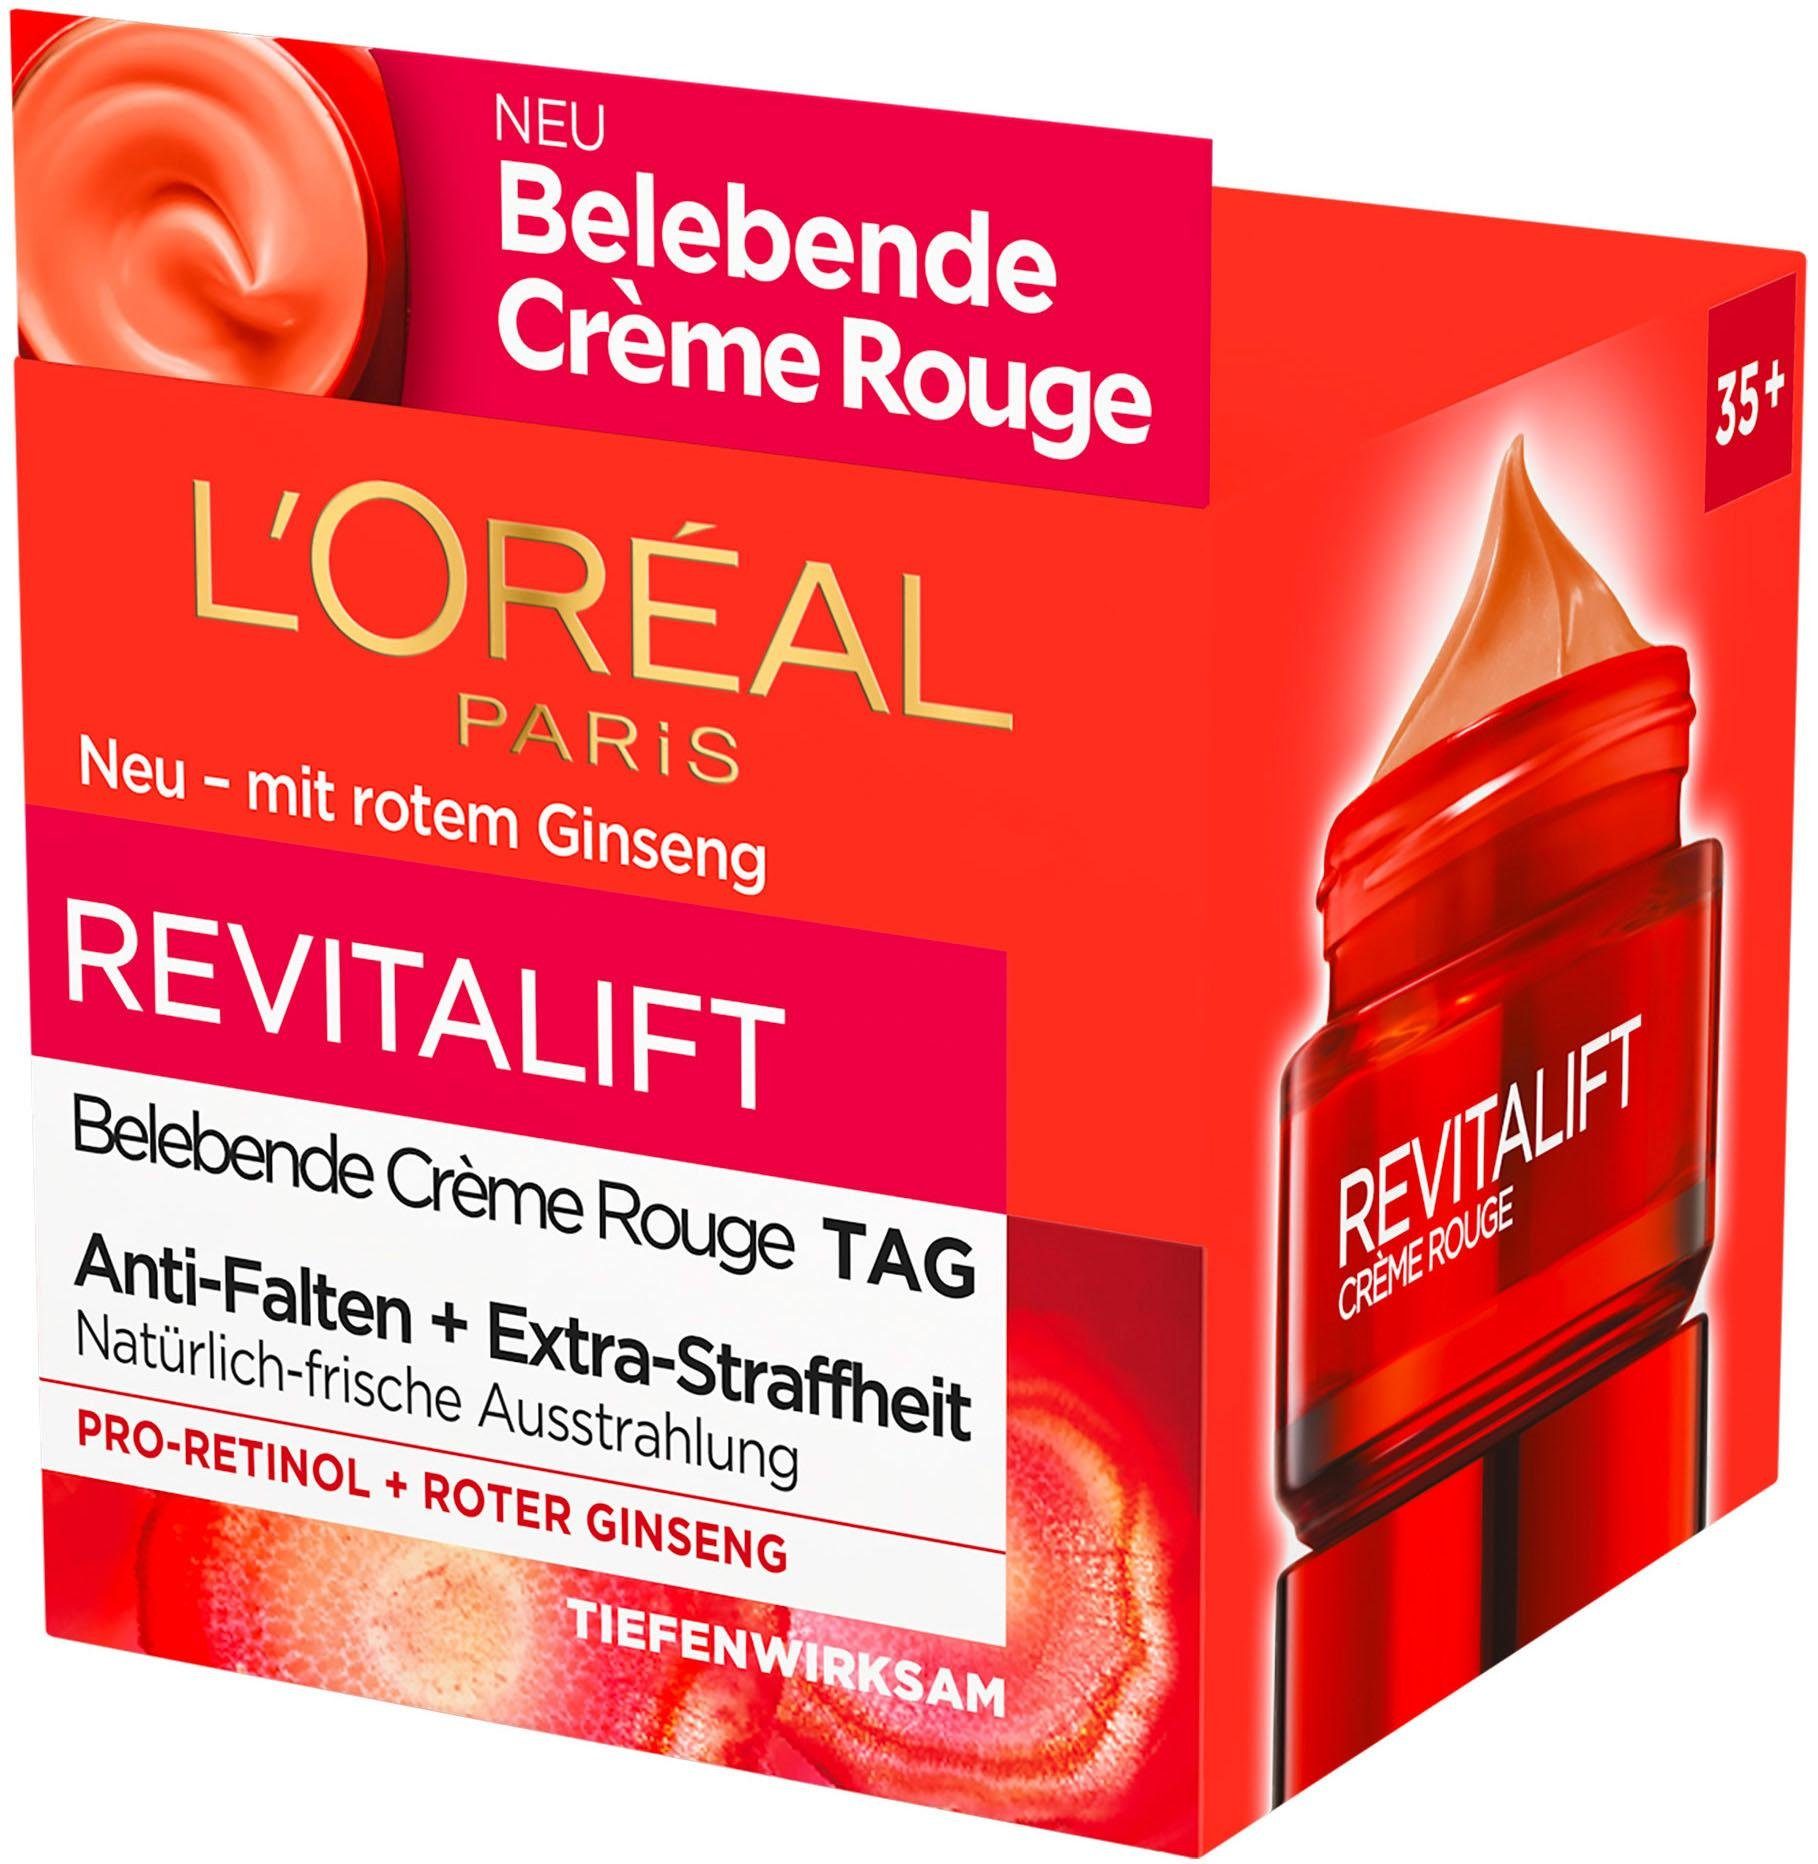 L'ORÉAL PARIS Crème Rouge Revitalift Tagescreme Belebende